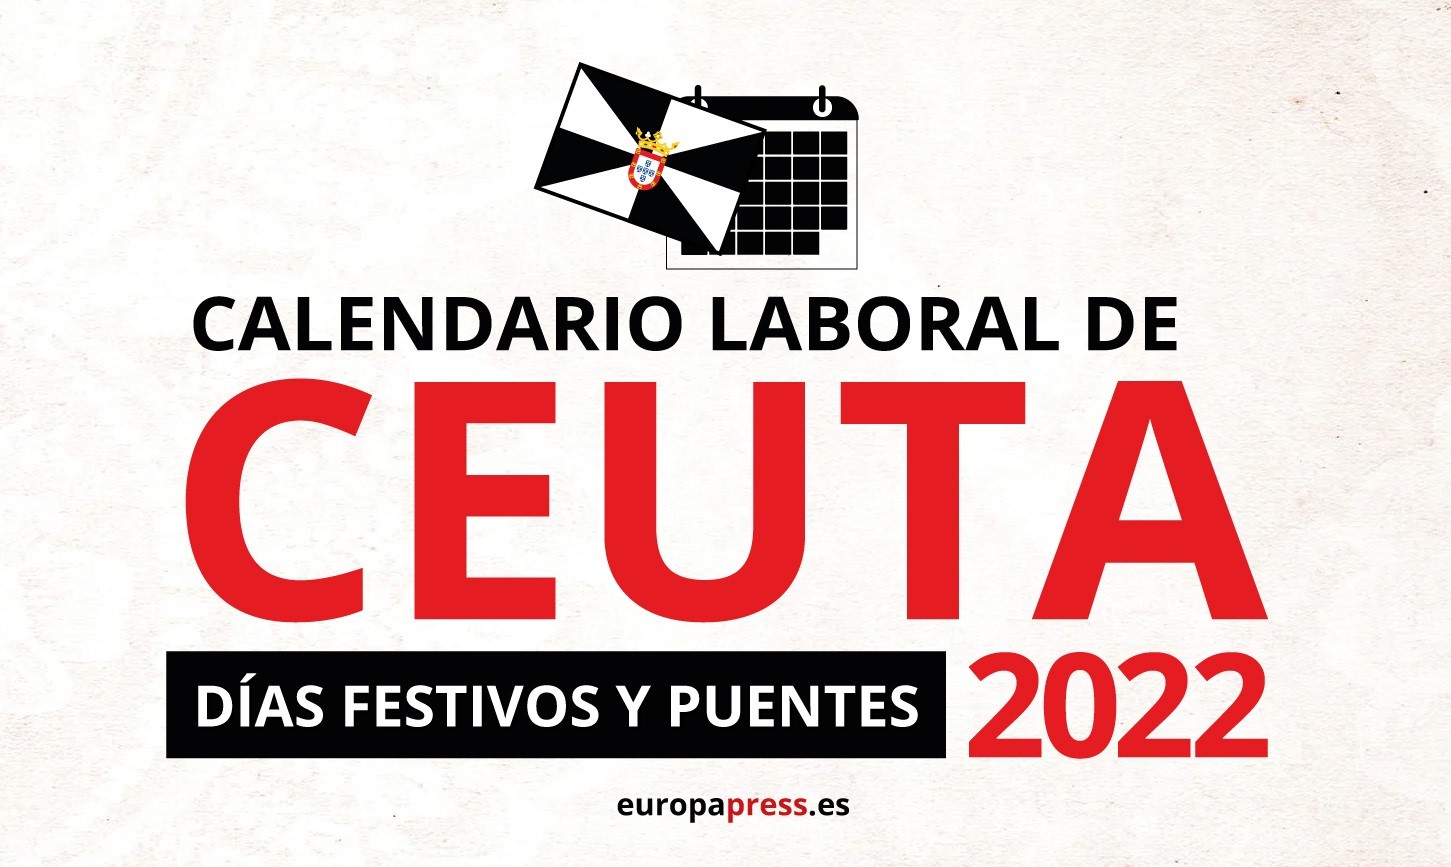 Calendario laboral de Ceuta para 2022